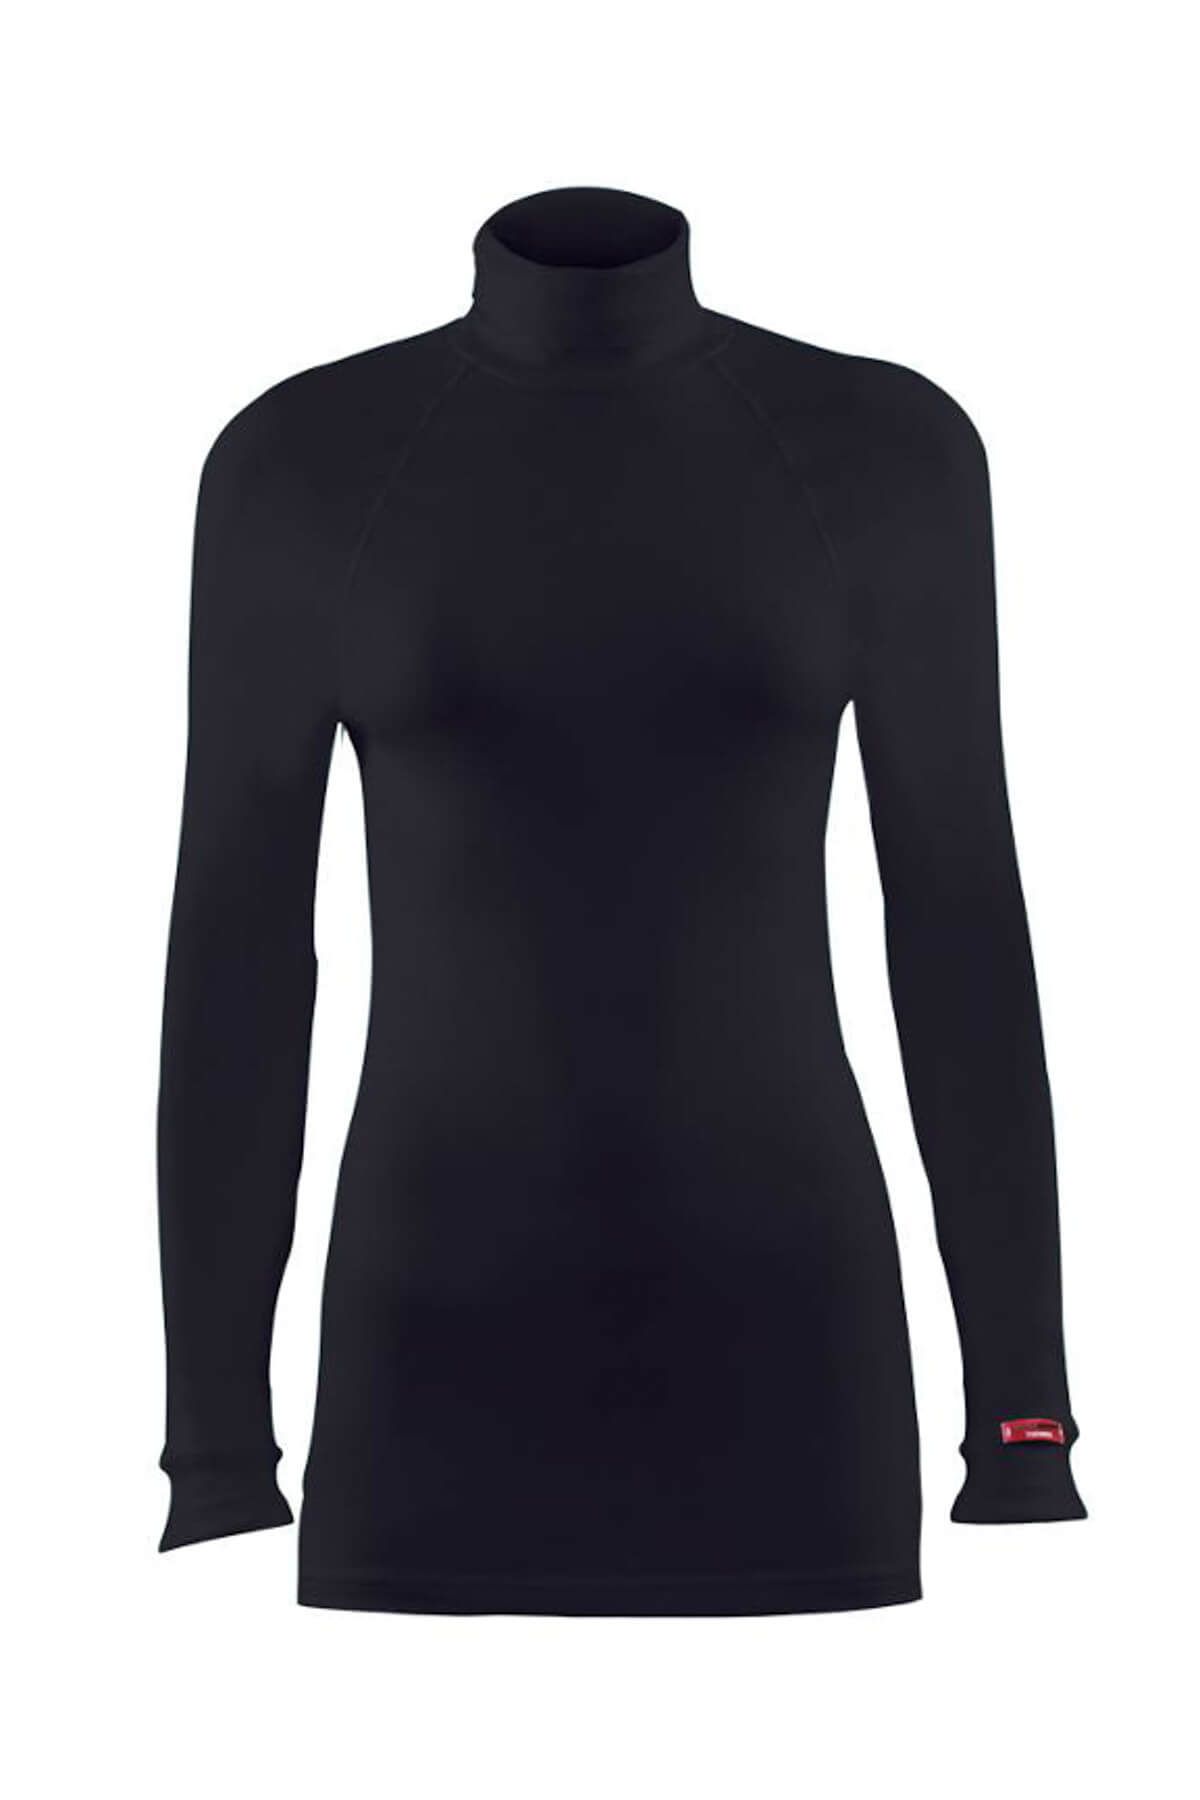 Blackspade Kadın Siyah 2. Seviye Termal  T-Shirt 9261